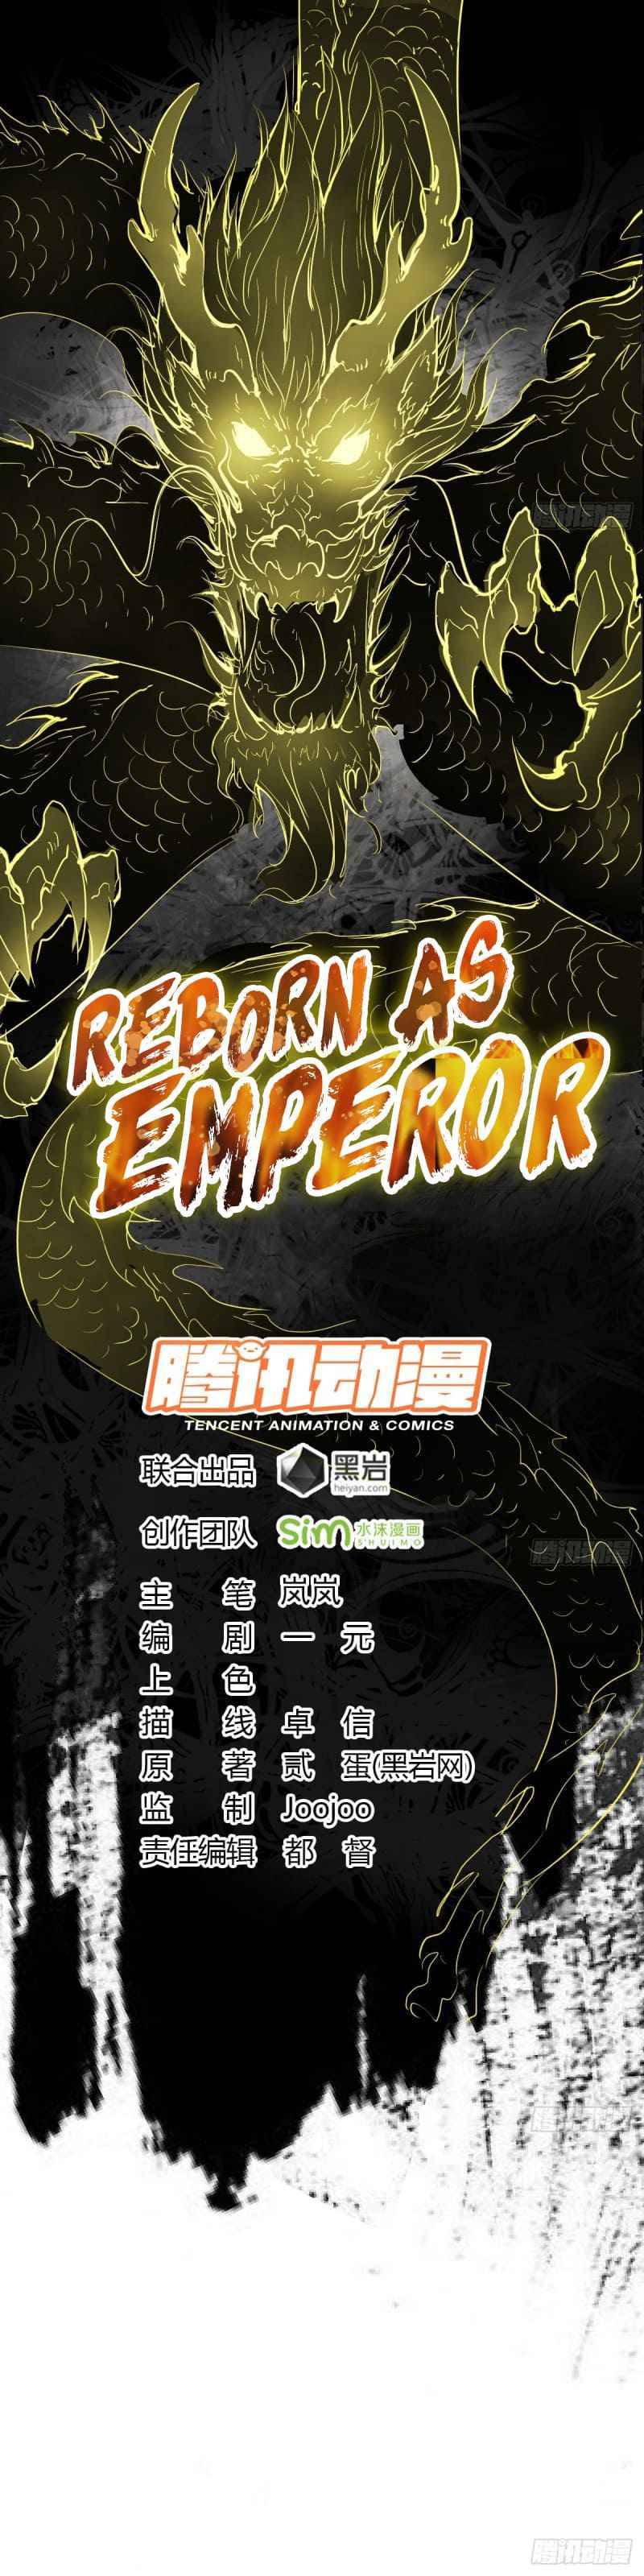 Reborn As King/emperor - Page 2